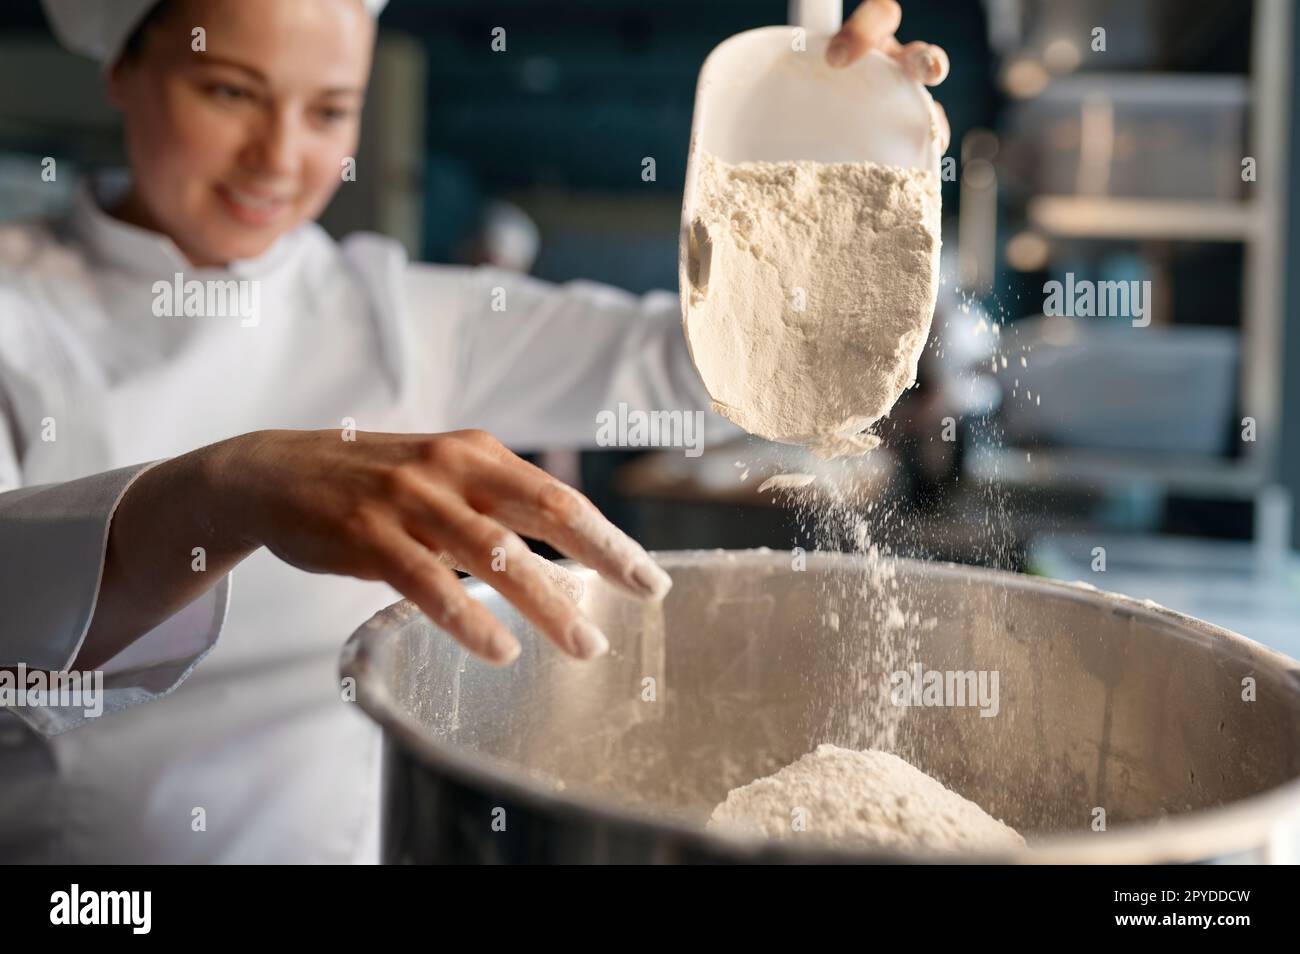 Une confiserie féminine portant un uniforme blanc mettant de la farine dans un grand bol en métal Banque D'Images